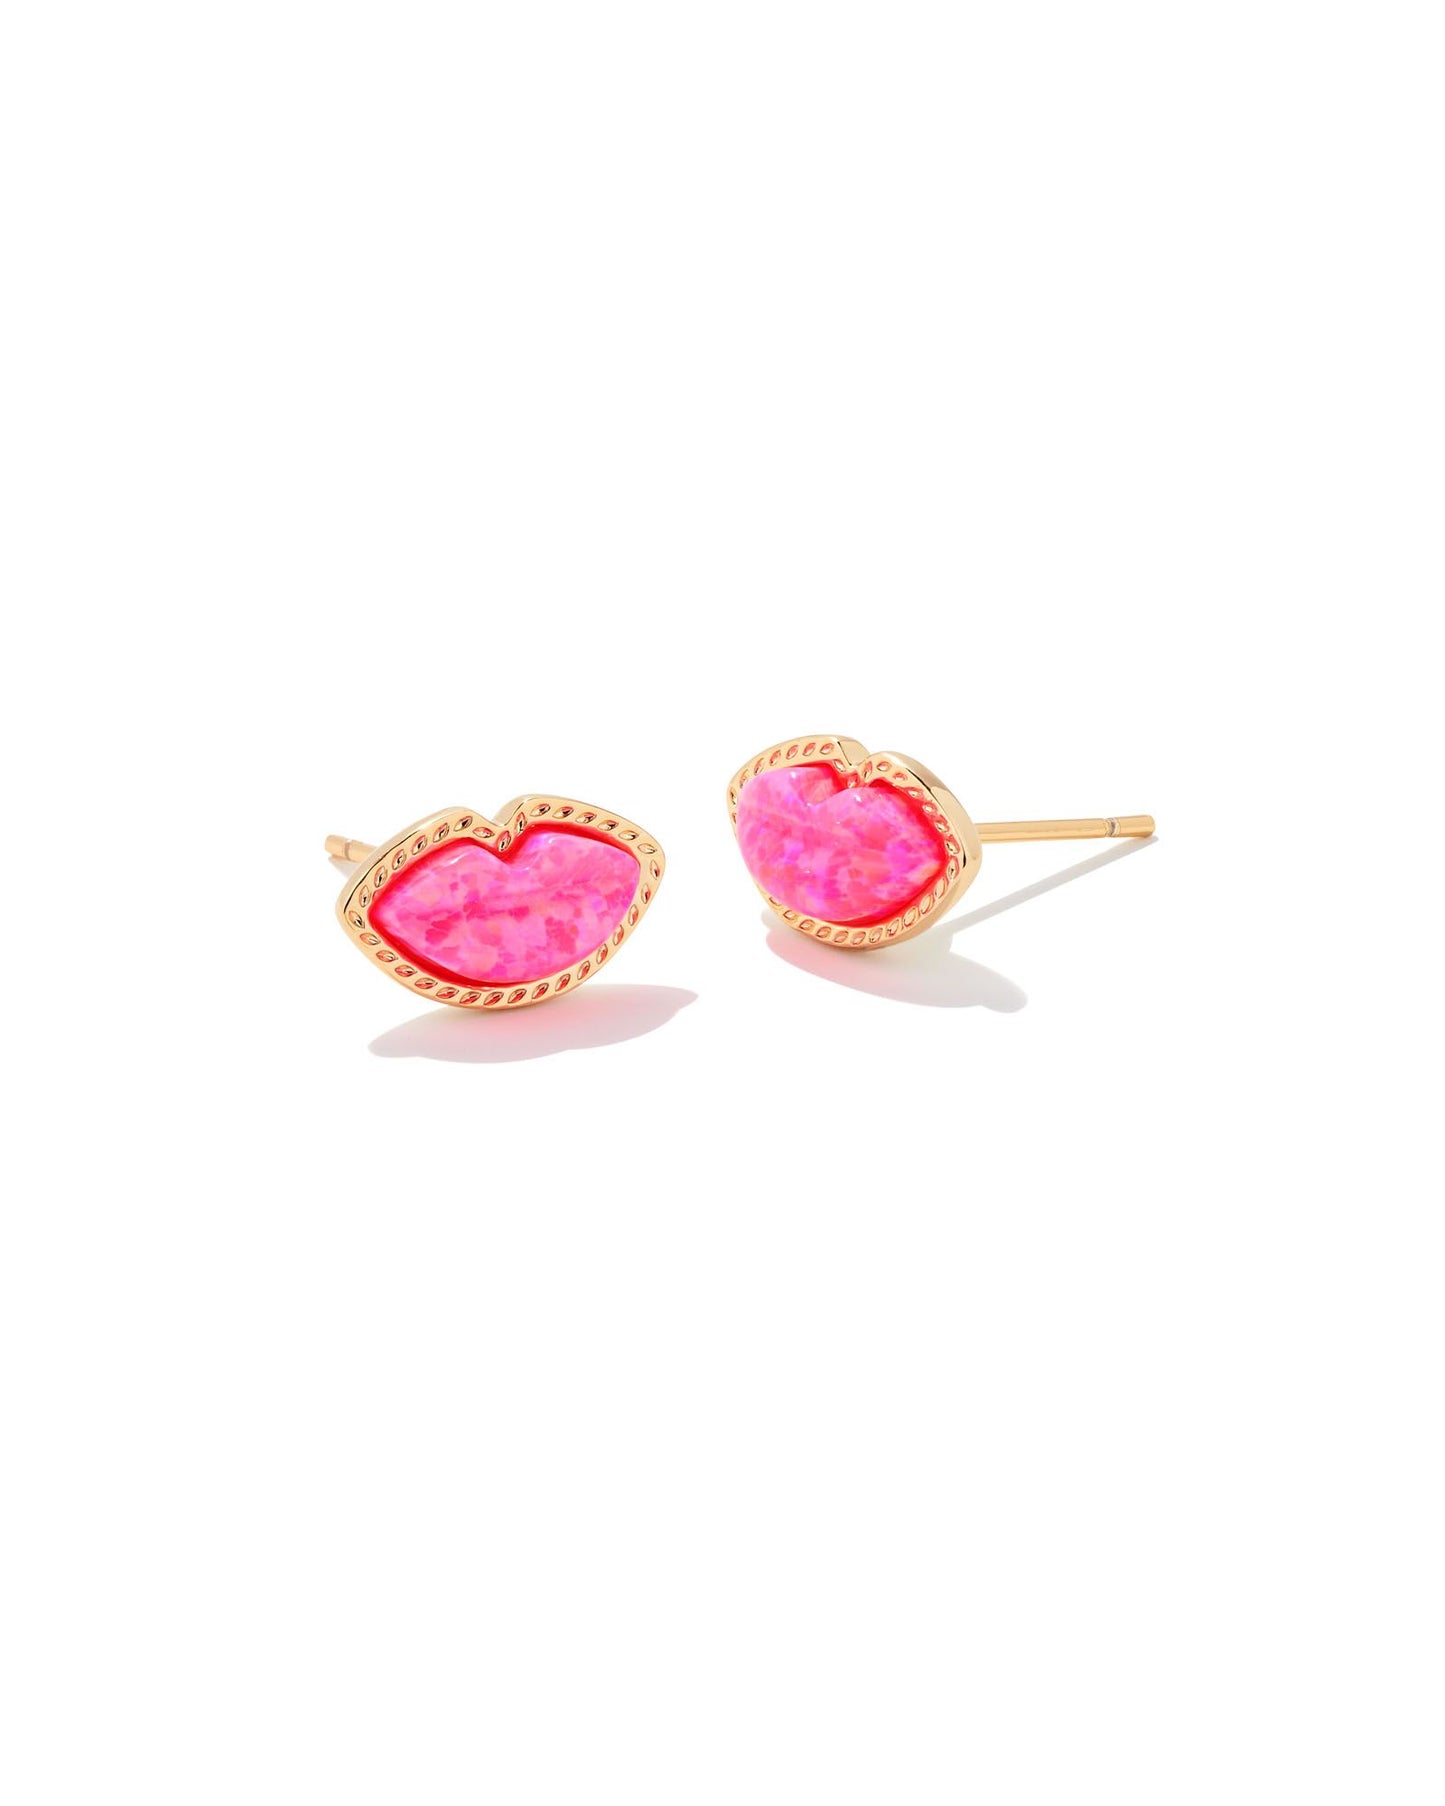 Kendra Scott Lips Stud Earrings - Bright Pink Opal